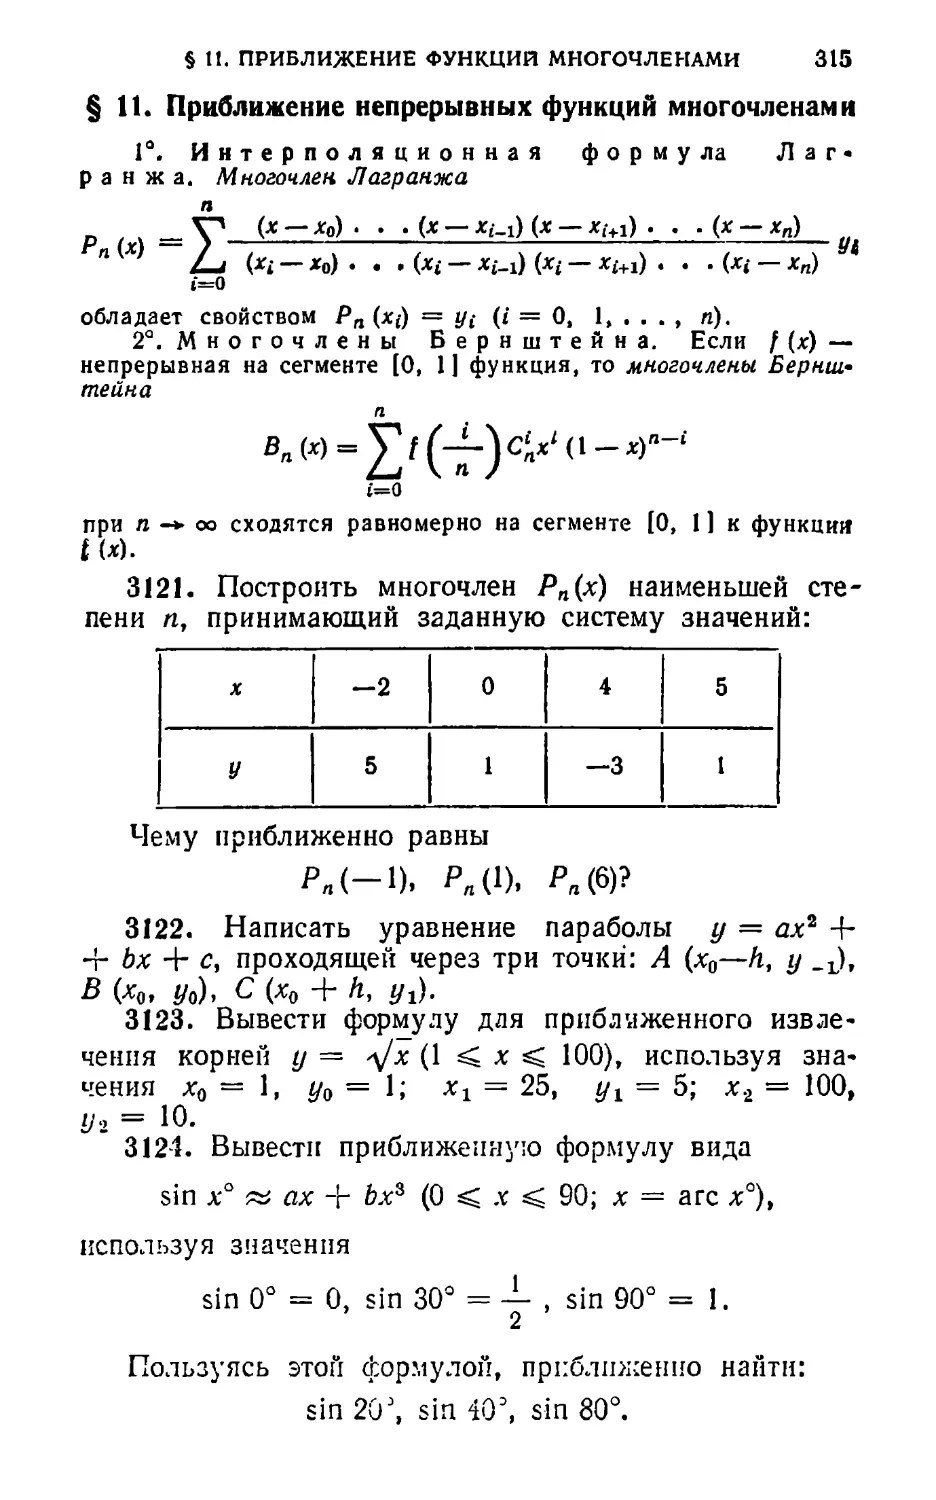 § 11. Приближение непрерывных функций многочленами